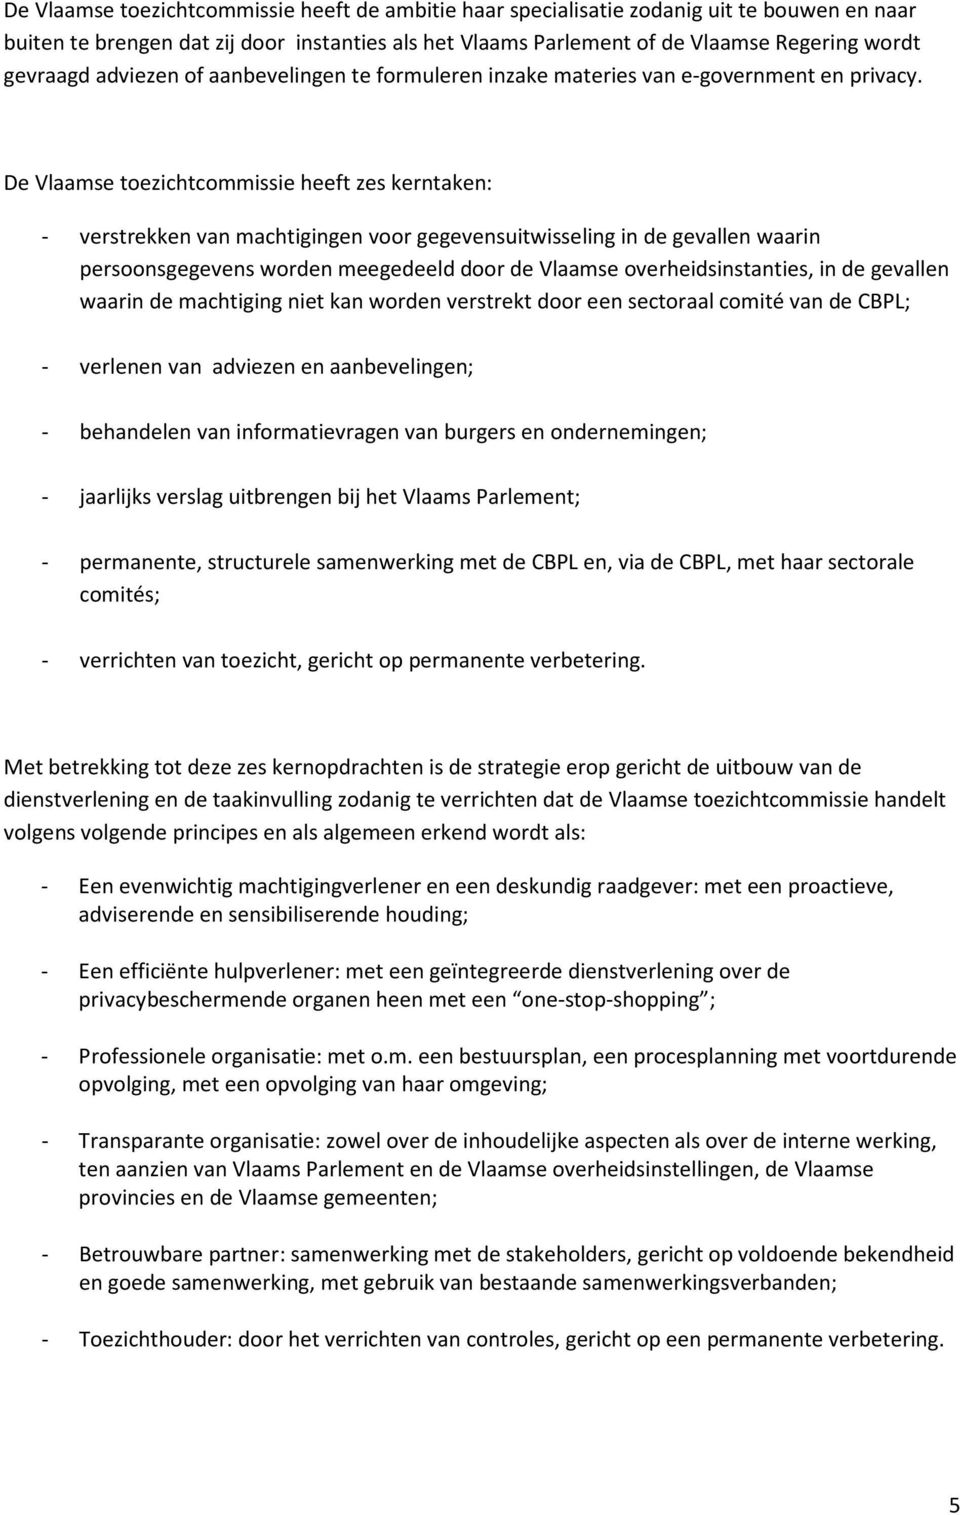 De Vlaamse toezichtcommissie heeft zes kerntaken: - verstrekken van machtigingen voor gegevensuitwisseling in de gevallen waarin persoonsgegevens worden meegedeeld door de Vlaamse